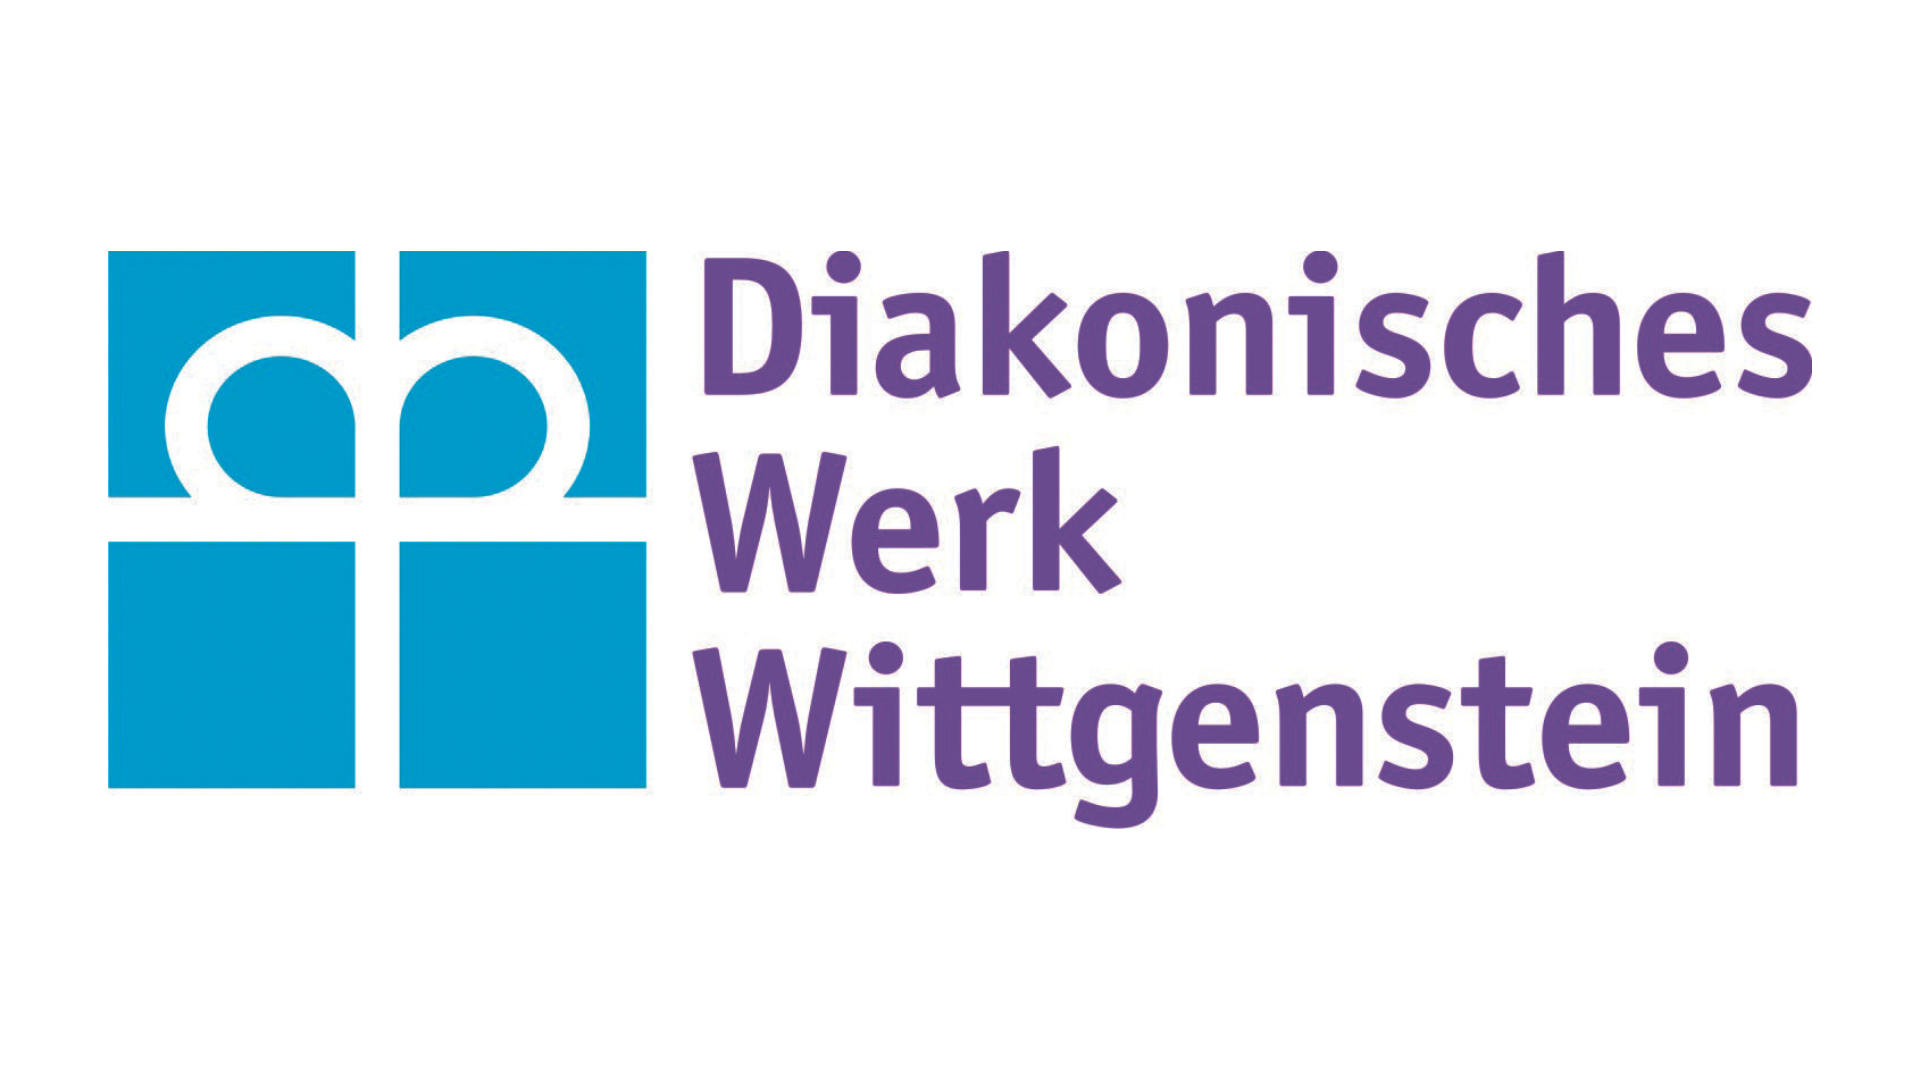 Logo Diakonisches Werk Wittgenstein gGmbH